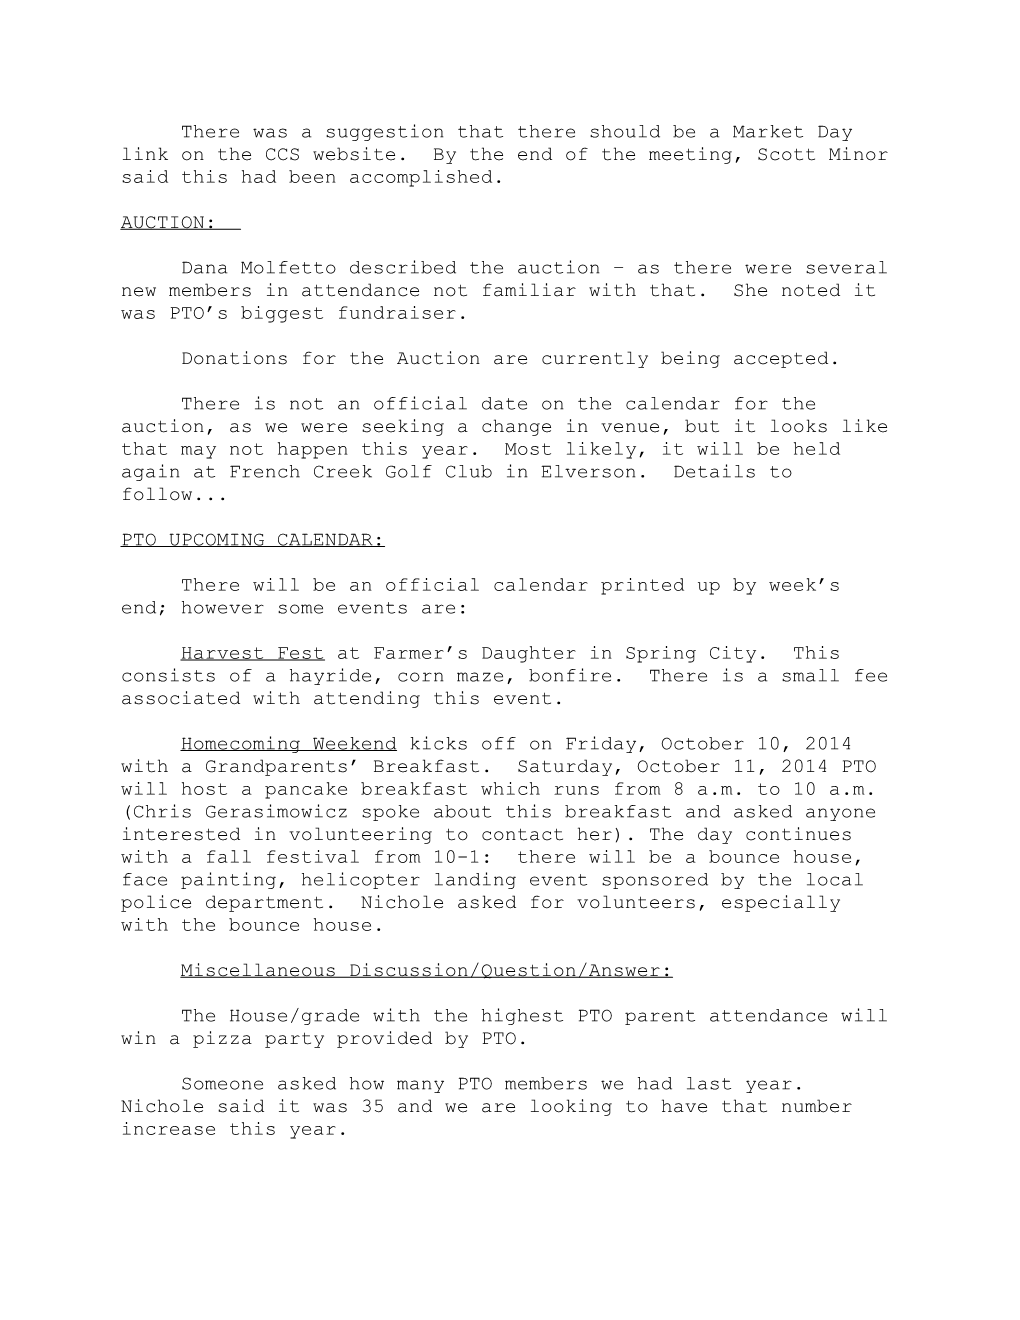 Minutes of Ccs Pto Meeting October 3, 2011